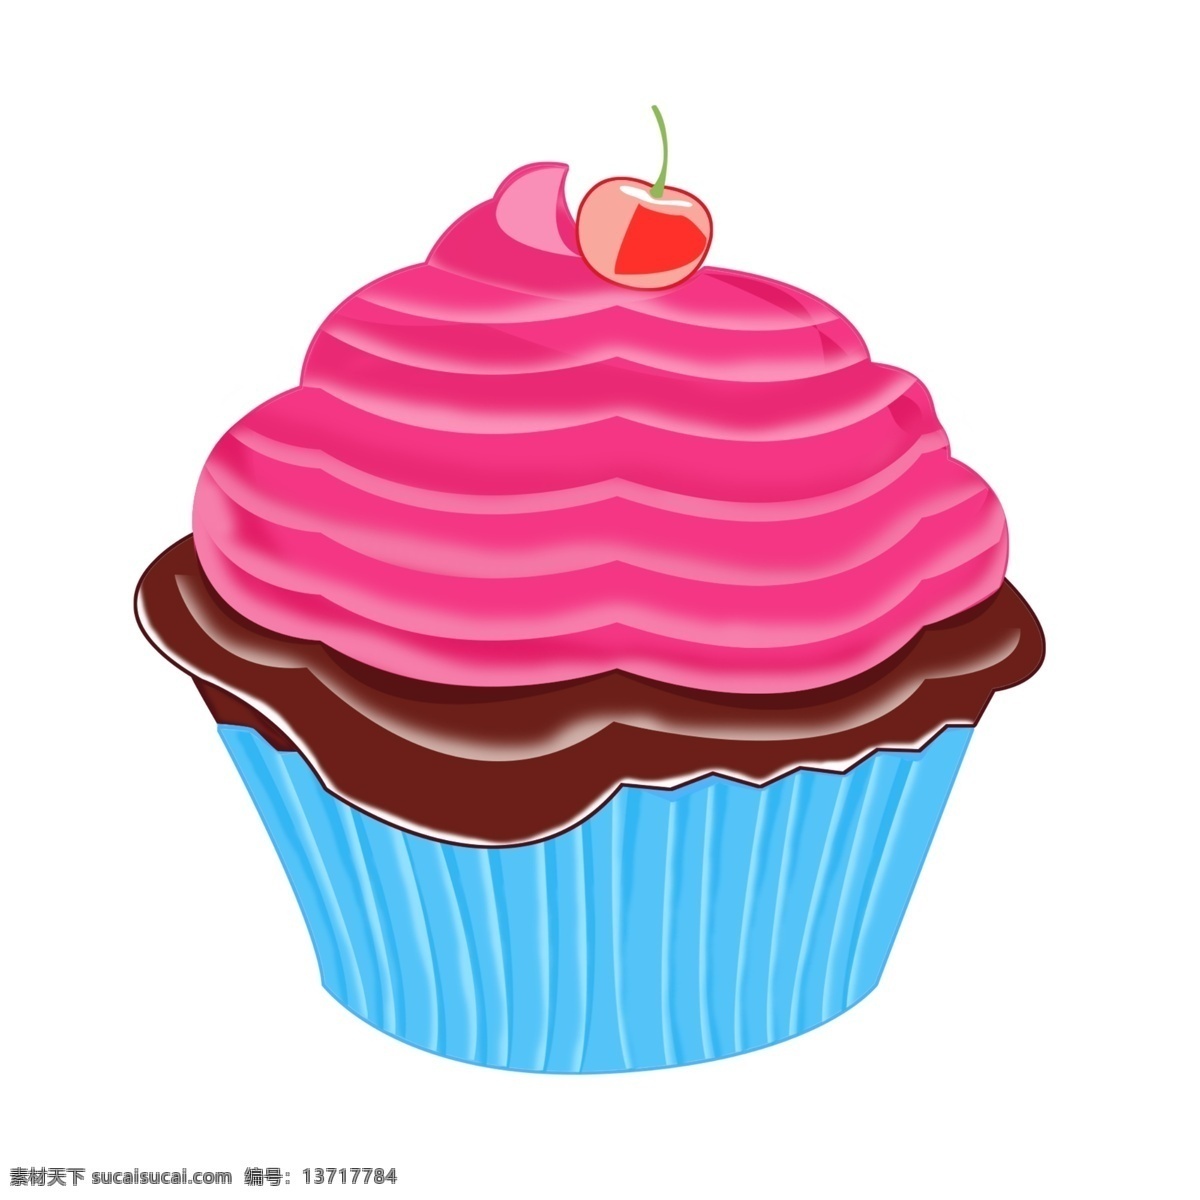 情人节 小 物 蓝色 杯 装 蛋糕 儿童节 生日 节日 浪漫情人节 绿色情人节 520 小蛋糕 庆祝 甜点 食物